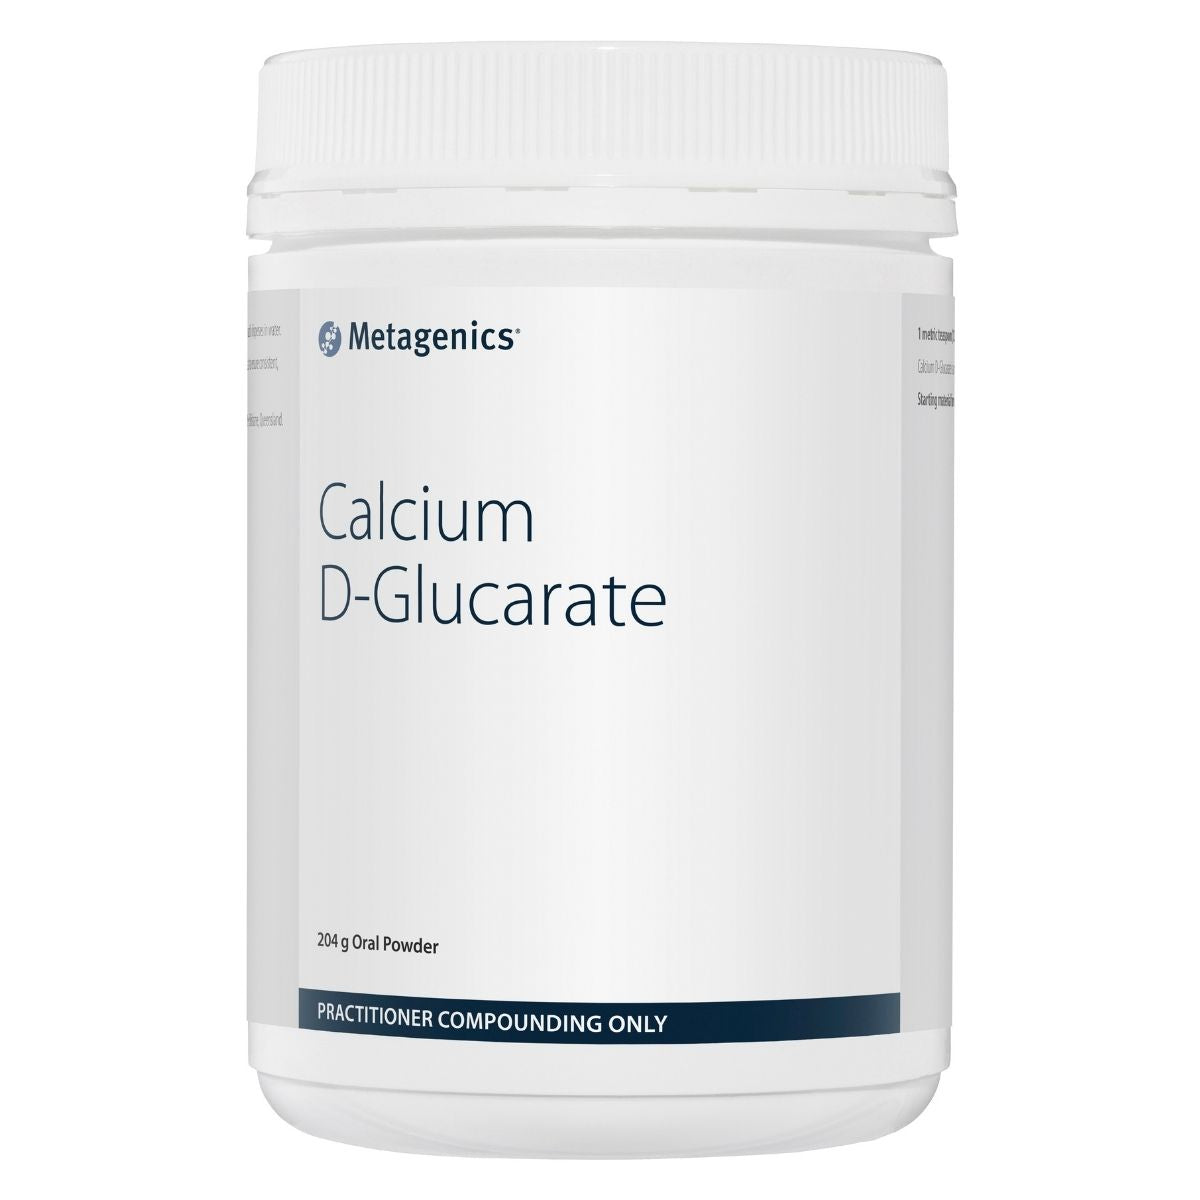 Metagenics Calcium-D-Glucarate